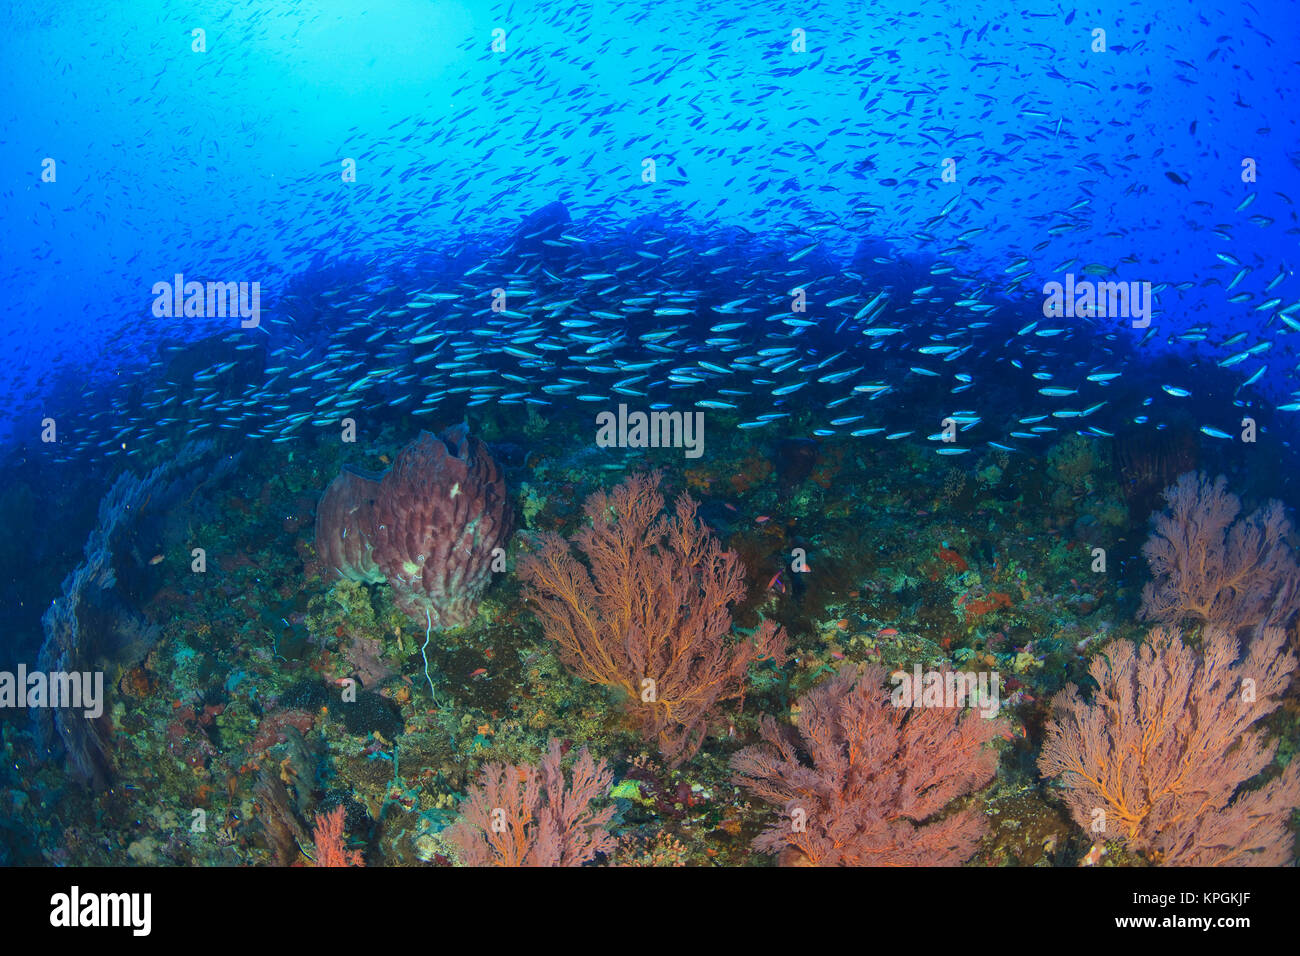 Profuse sea life, fusiliers and soft corals and sea fans, Gunung Api Island, Banda Sea, Indonesia Stock Photo